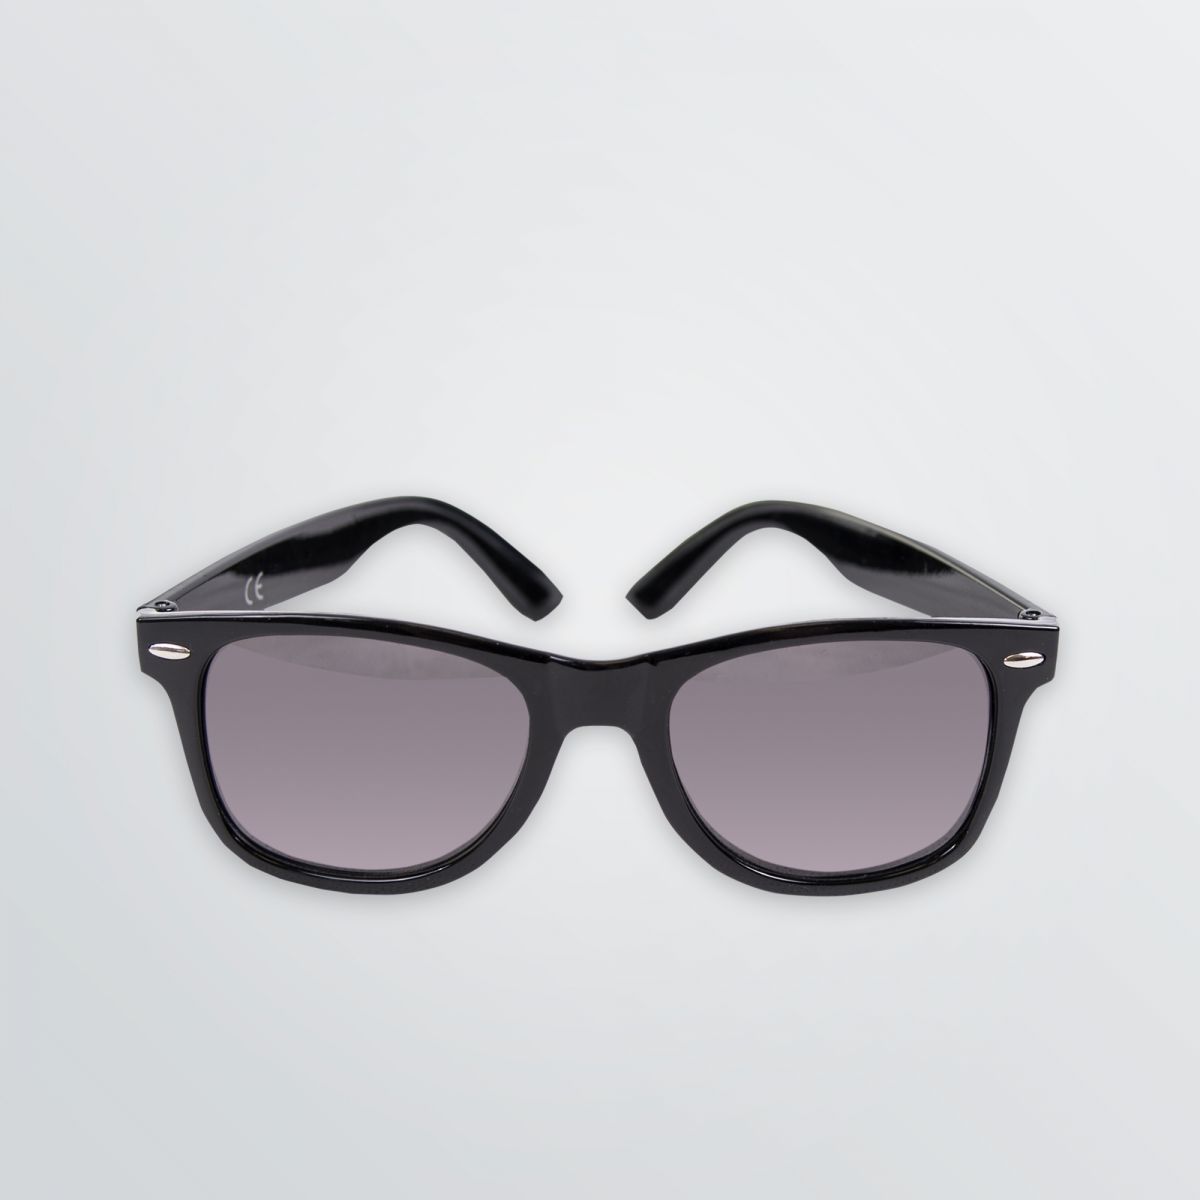 Sonnenbrille mit schwarzem Kunststoffgestell und getönten Gläsern zum Bedrucken